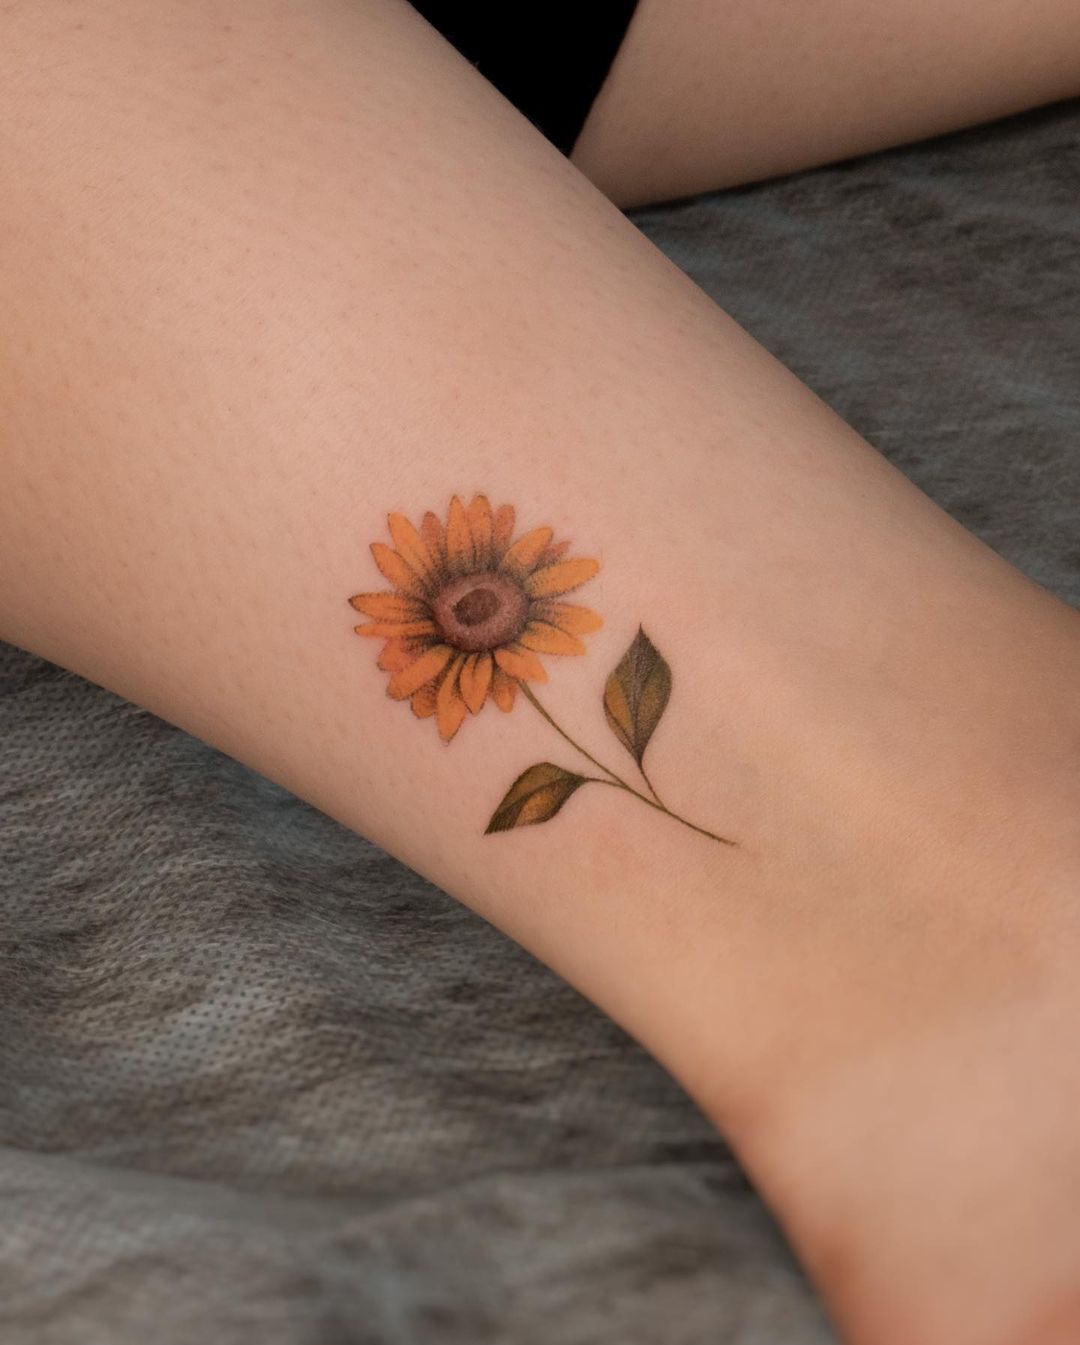 Mini sunflower tattoo by nurai.tattoo